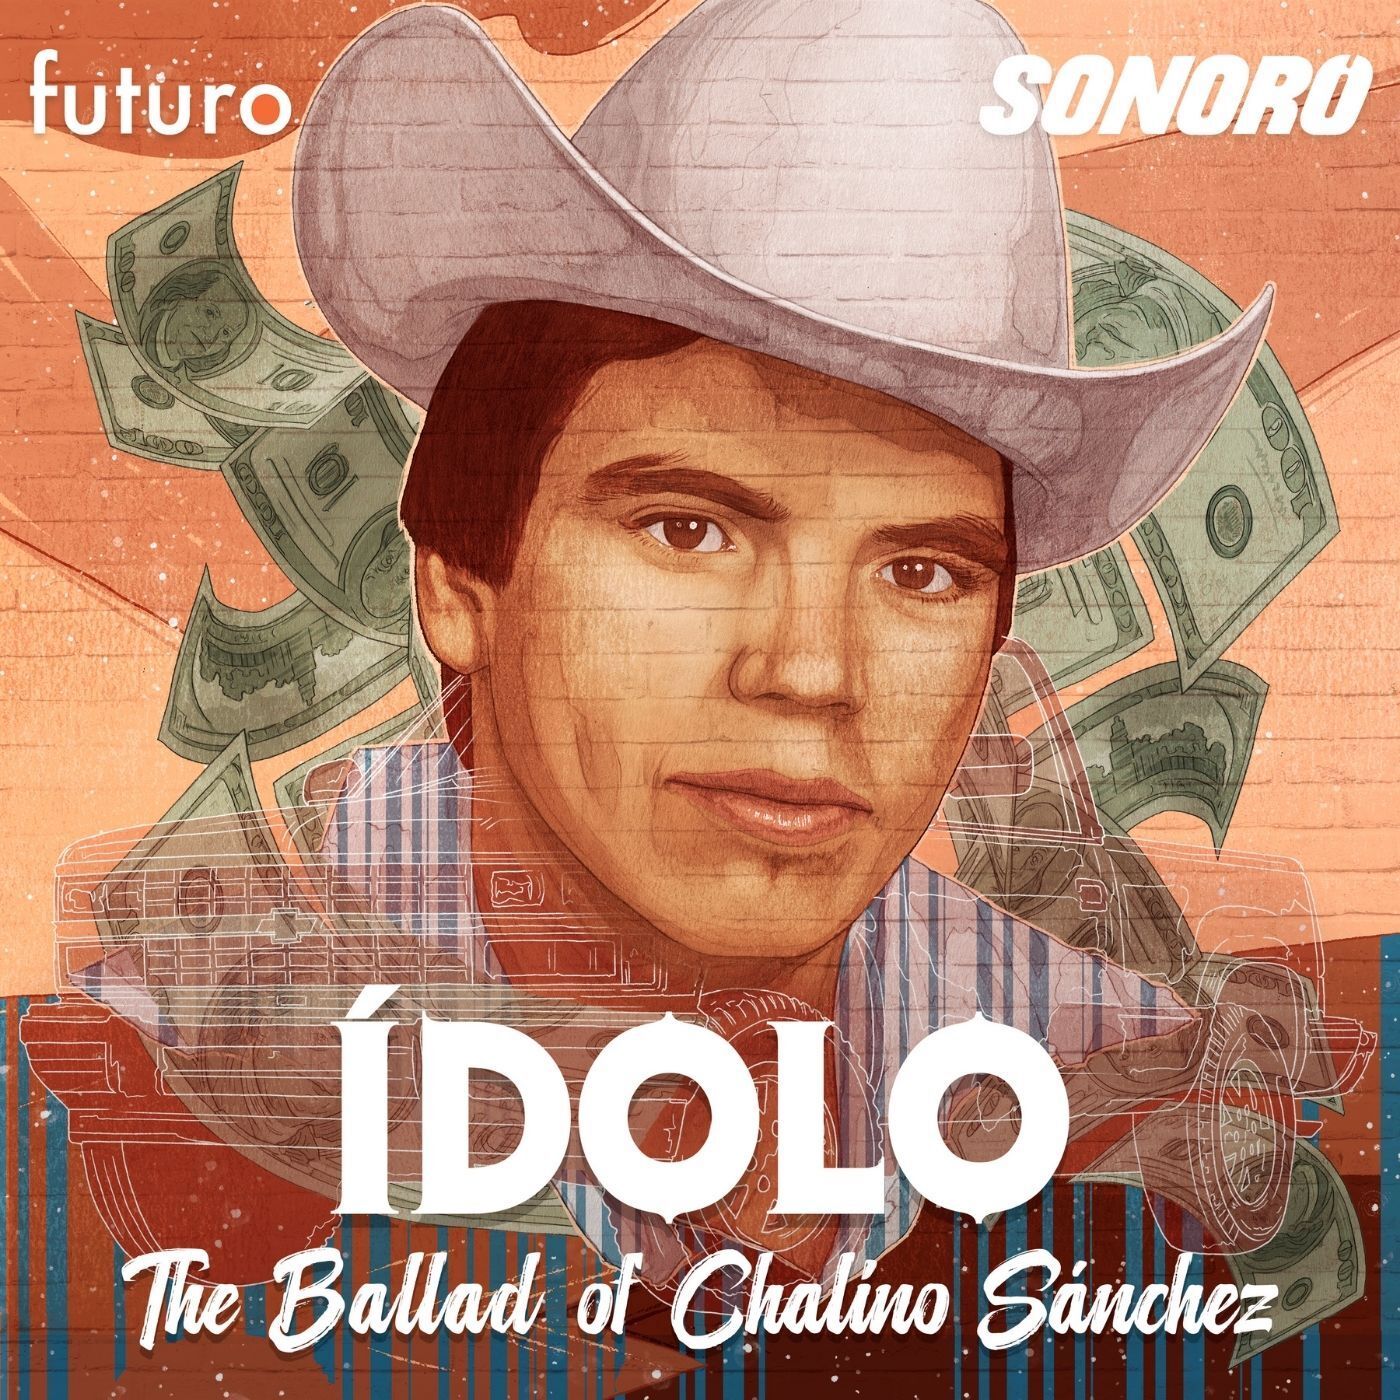 La nota de muerte (The Ballad of Chalino Sánchez)